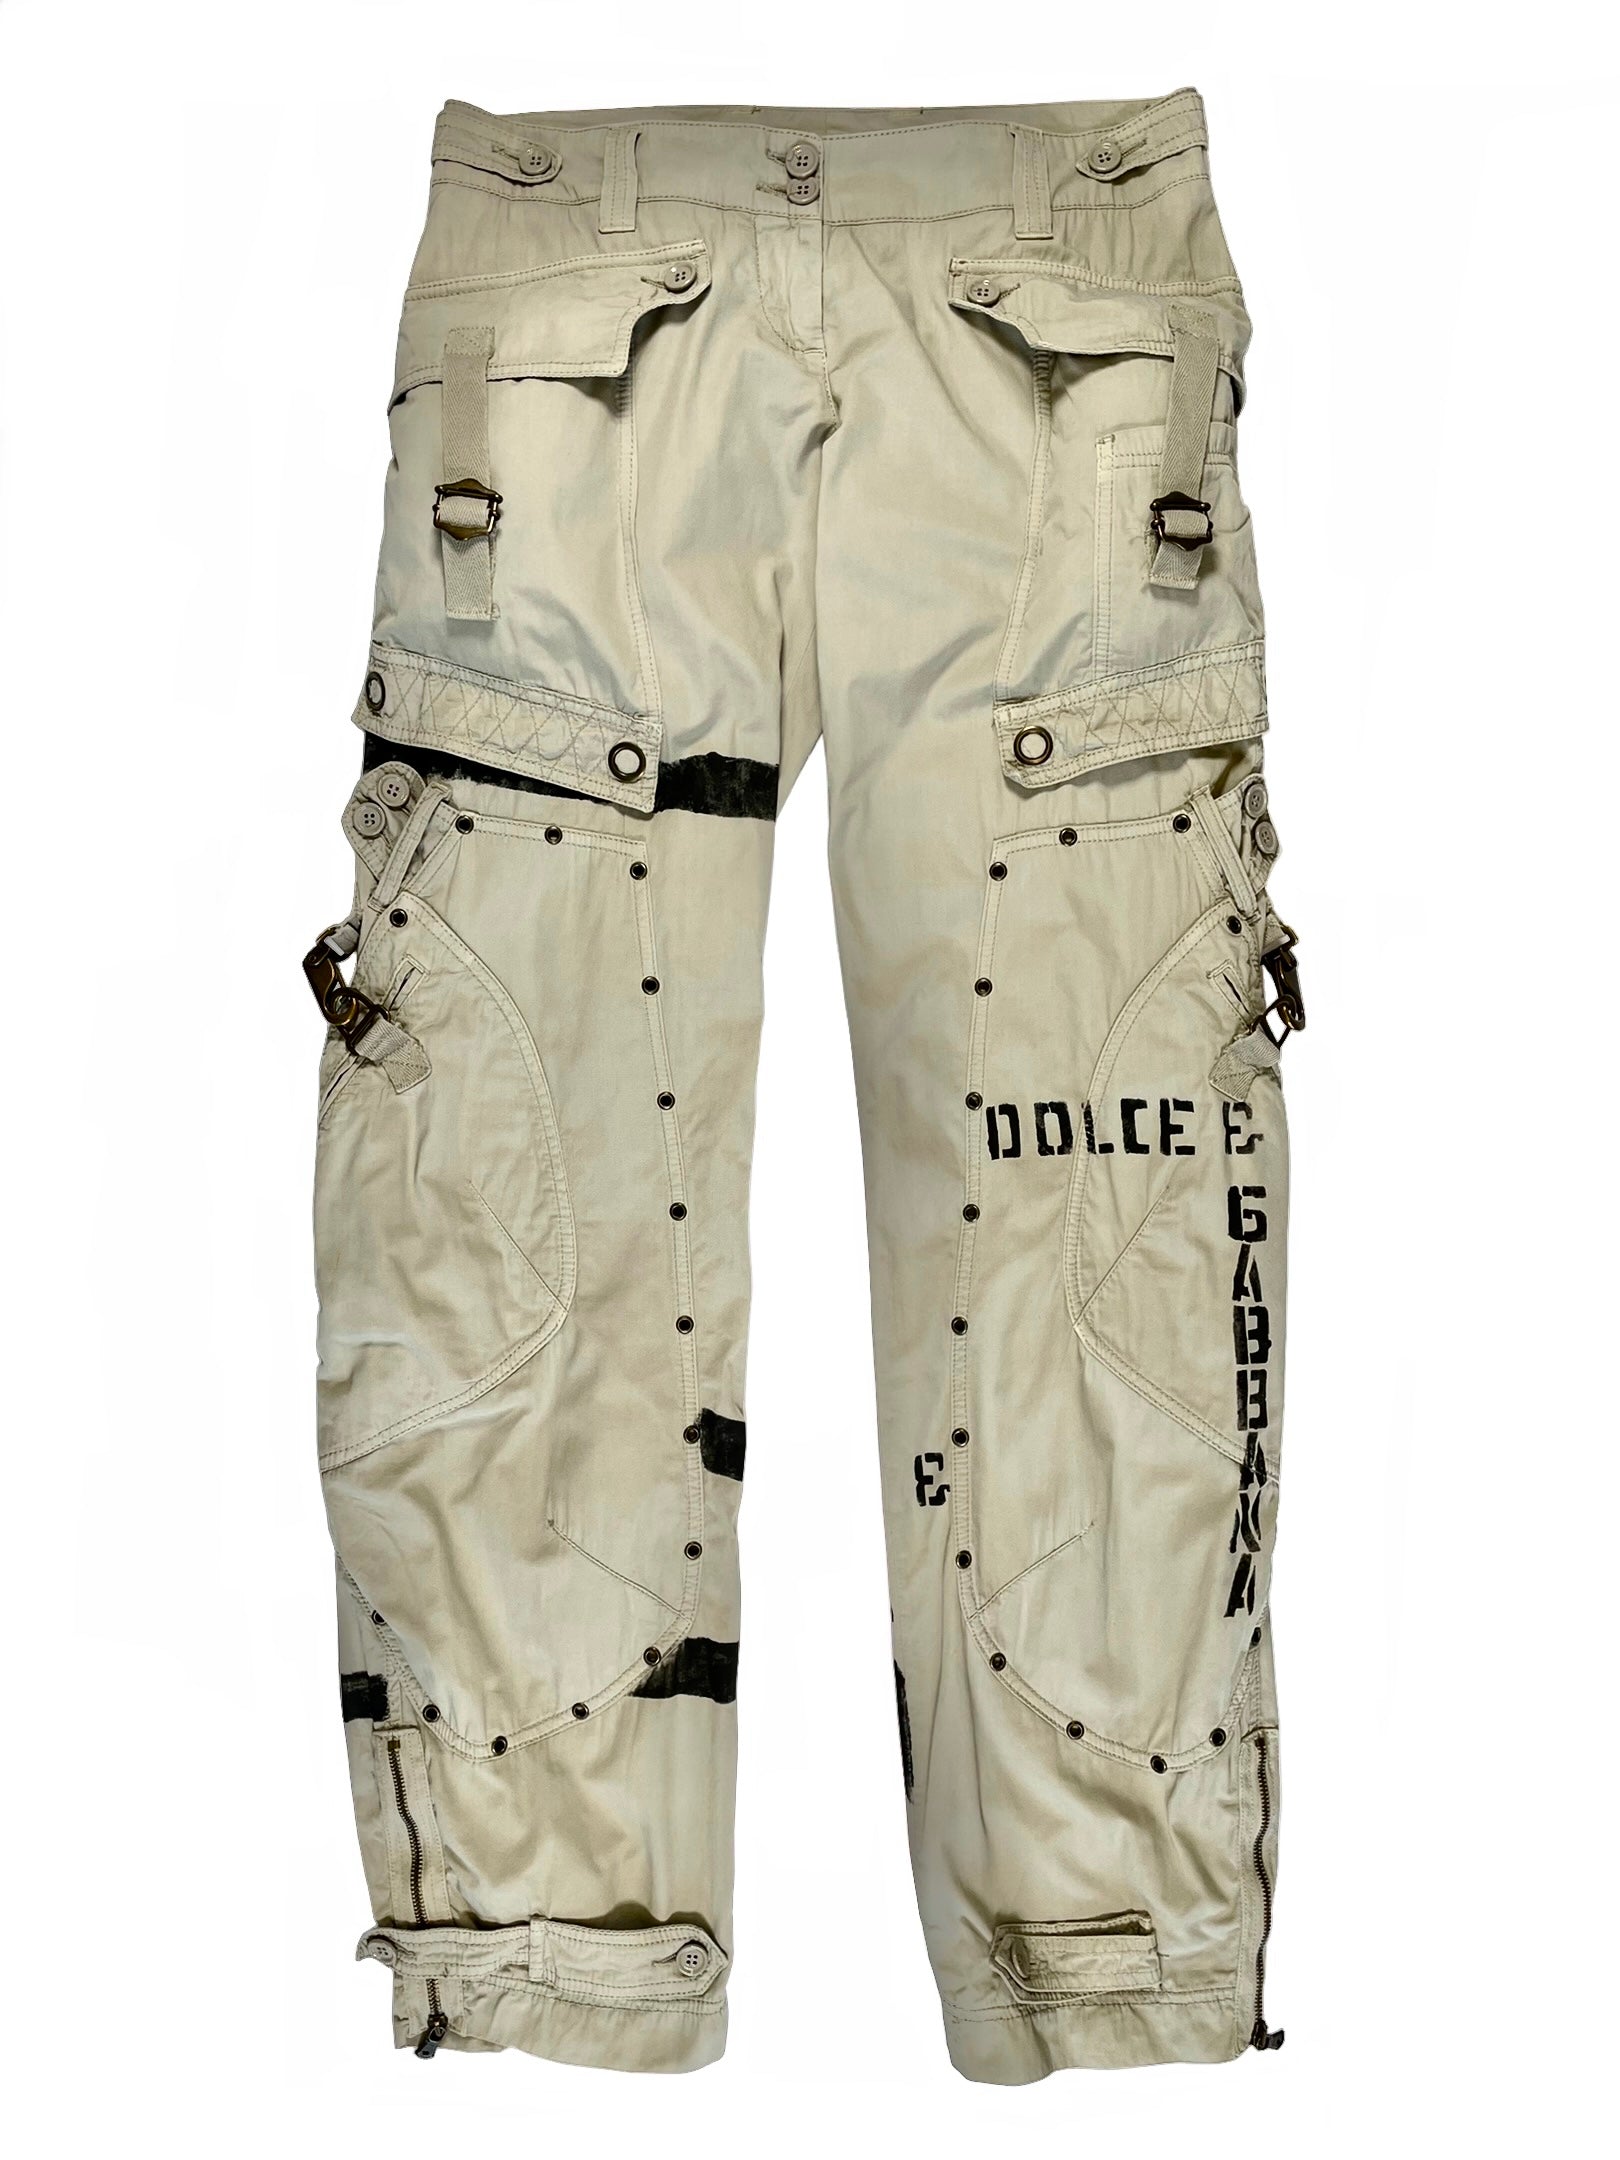 2000's Dolce & Gabbana bondage military cargo pants – elevated